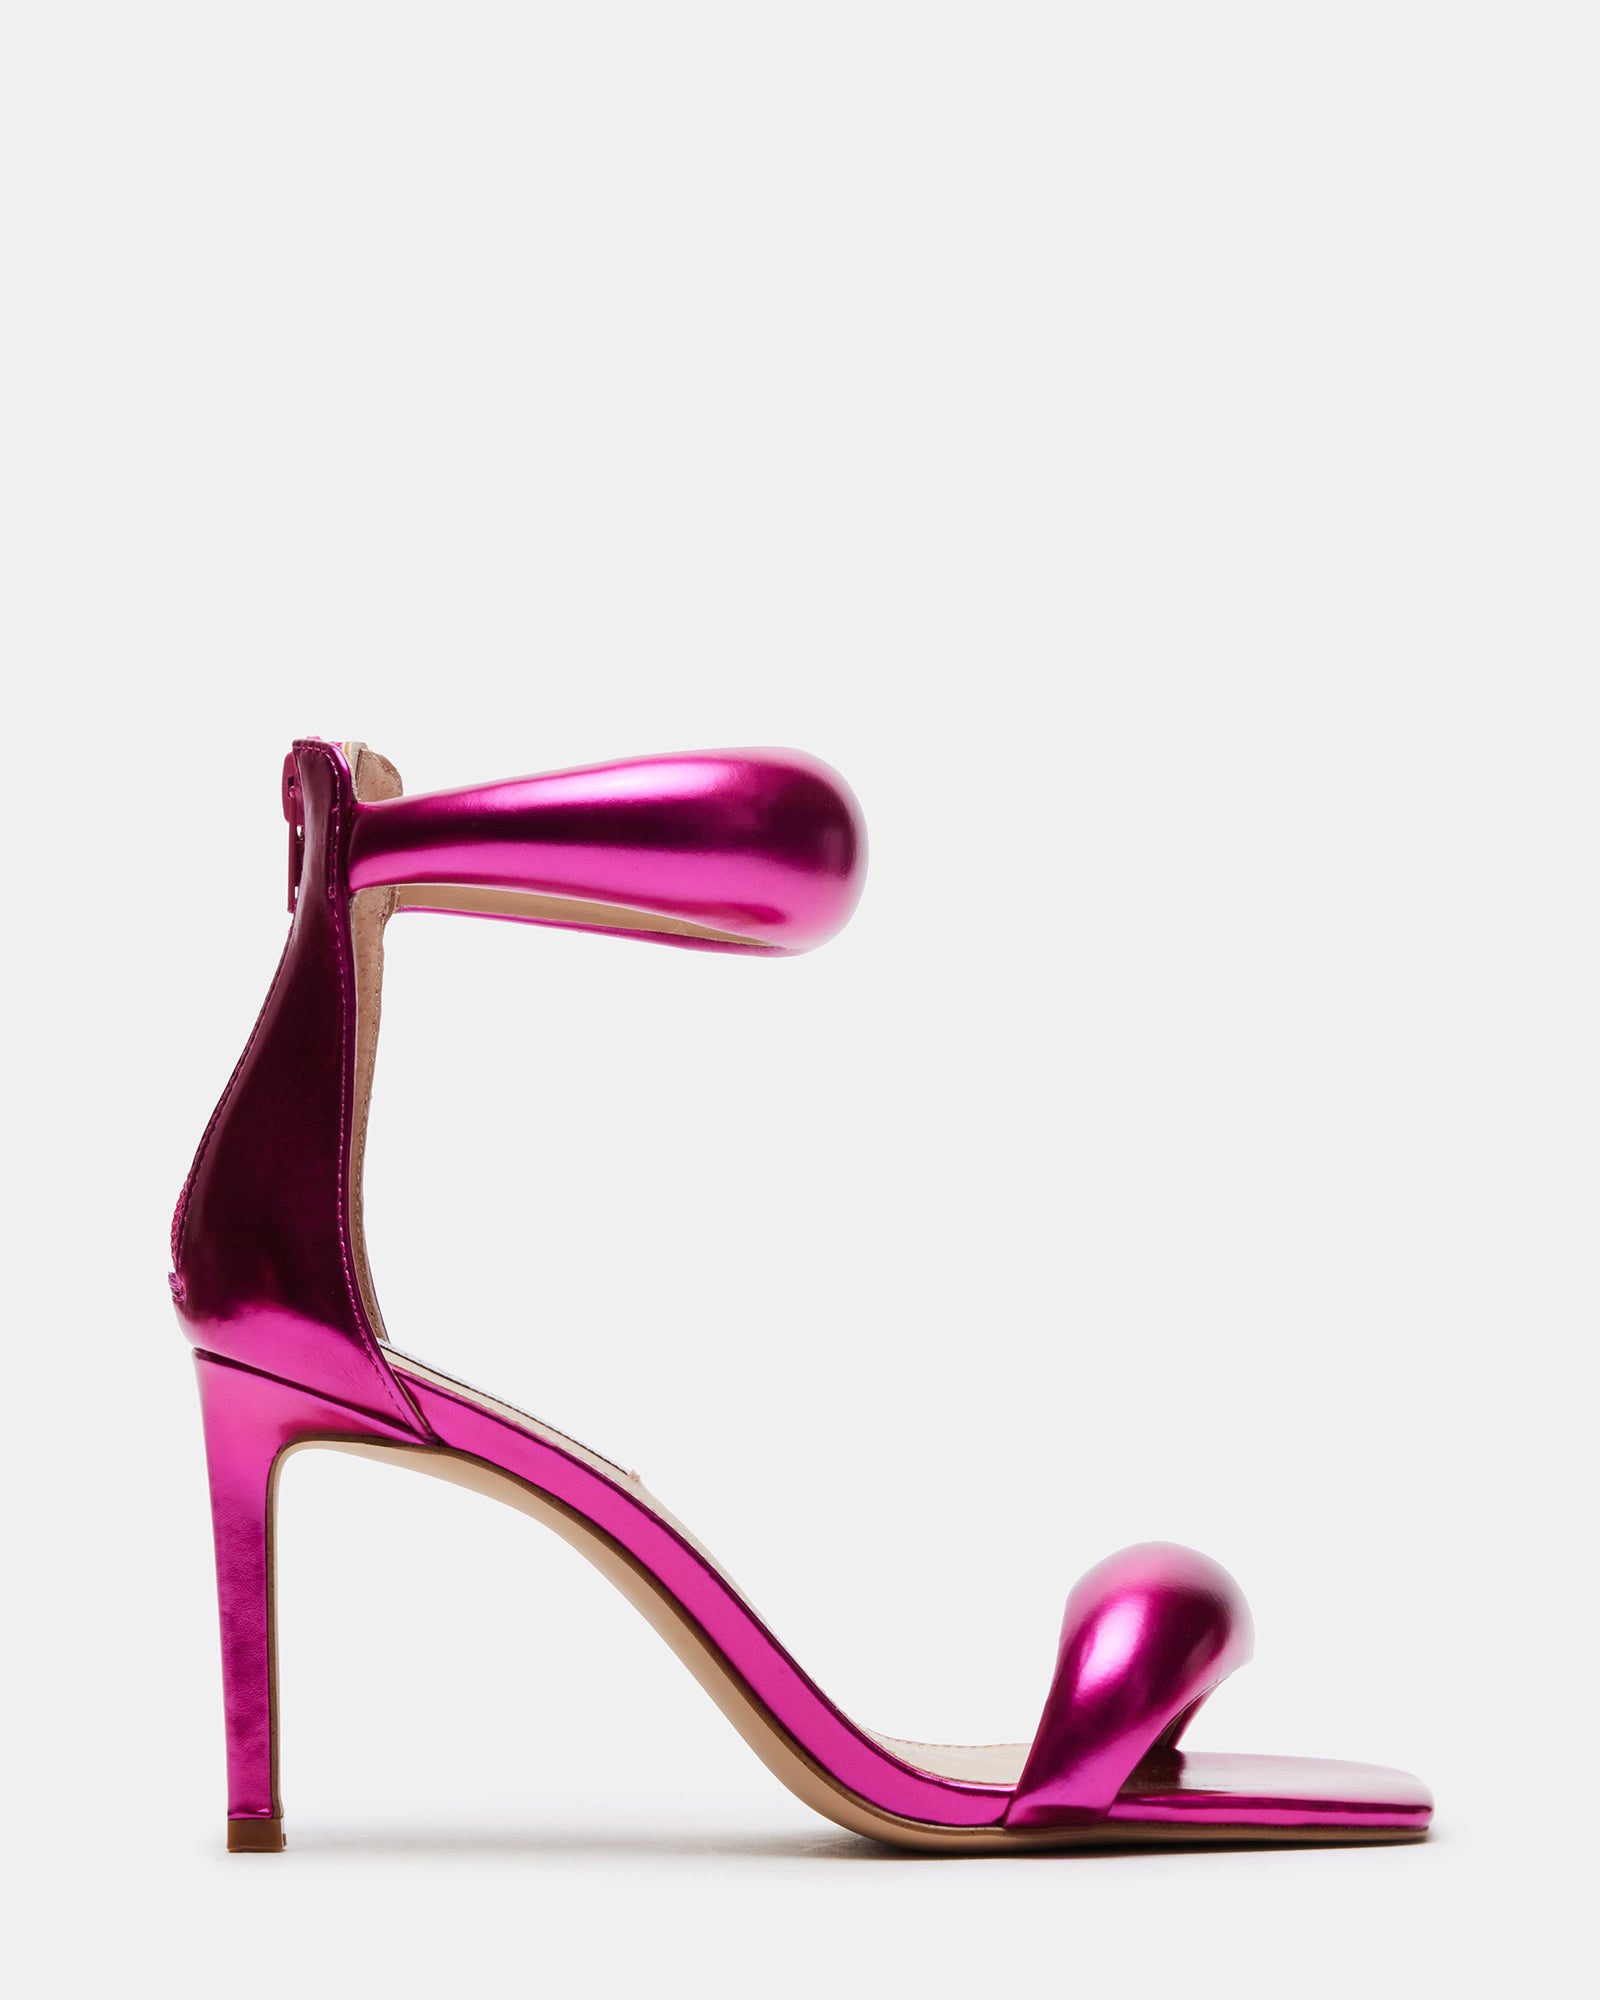 Bottega Veneta Ladies Pink Square Toe Heel Sandal, Brand Size 35 ( US Size  5 ) 630178 VBP10 5610 - Shoes, Bottega Veneta Shoes - Jomashop